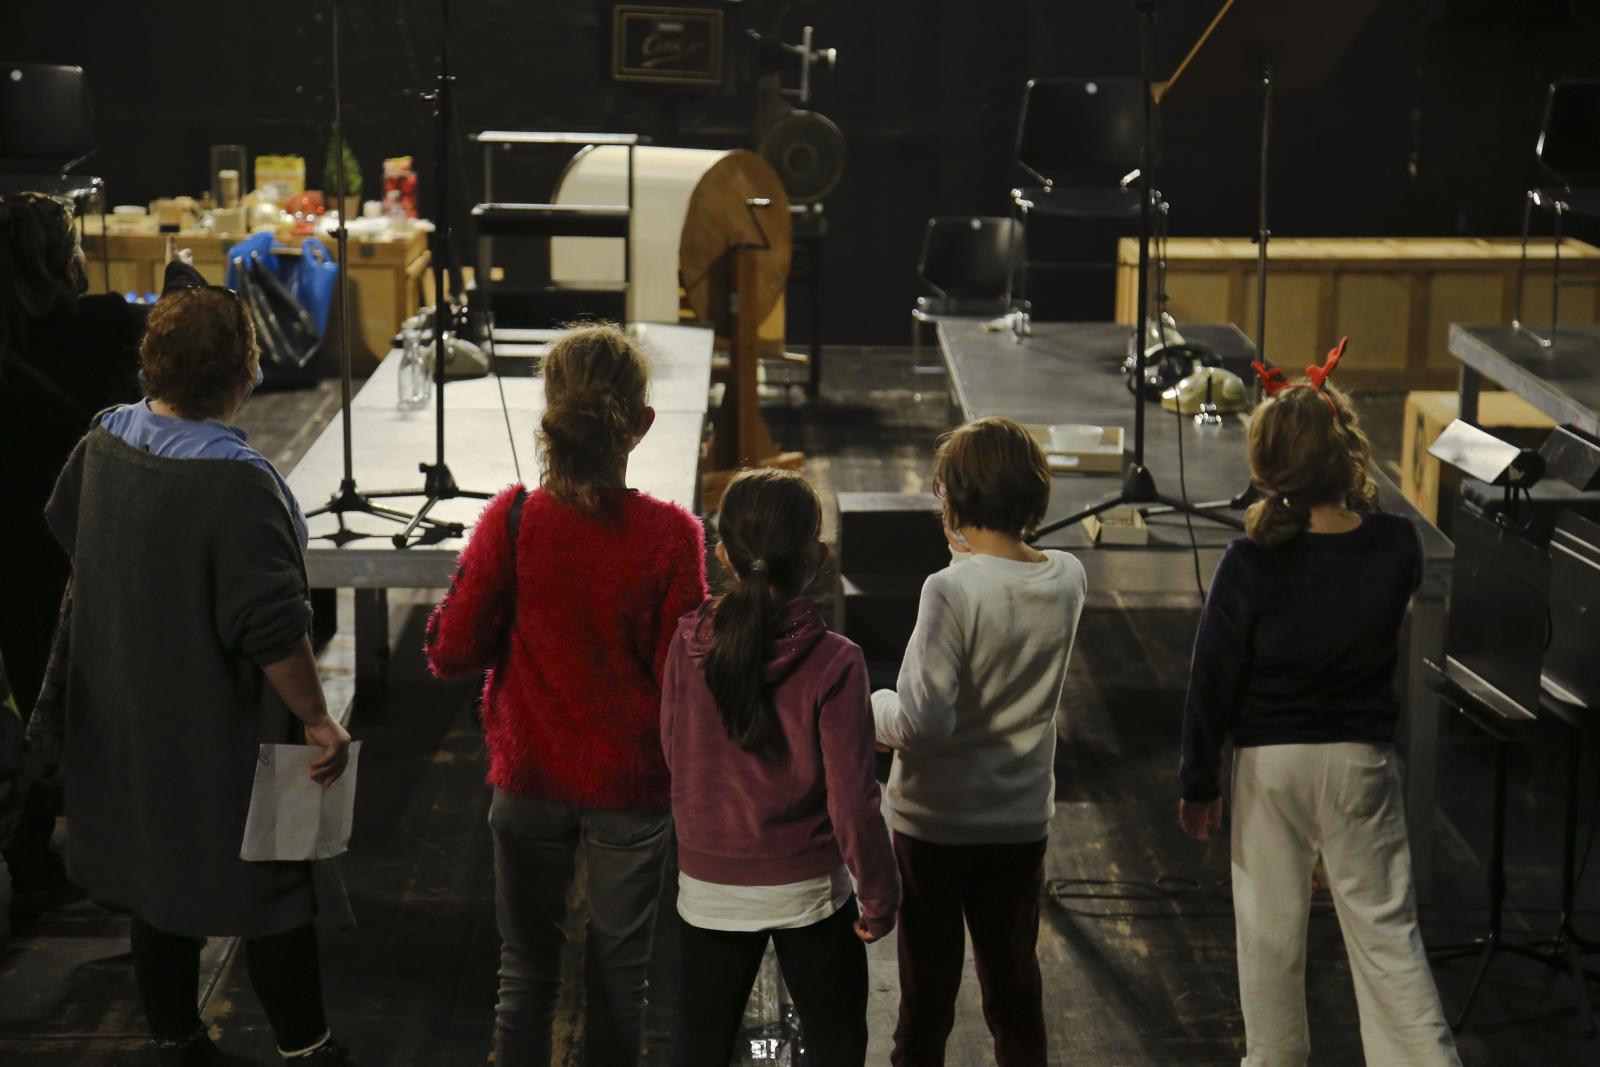 Τα εκπαιδευτικά προγράμματα για μικρούς και μεγάλους του Μεγάρου Μουσικής Αθηνών